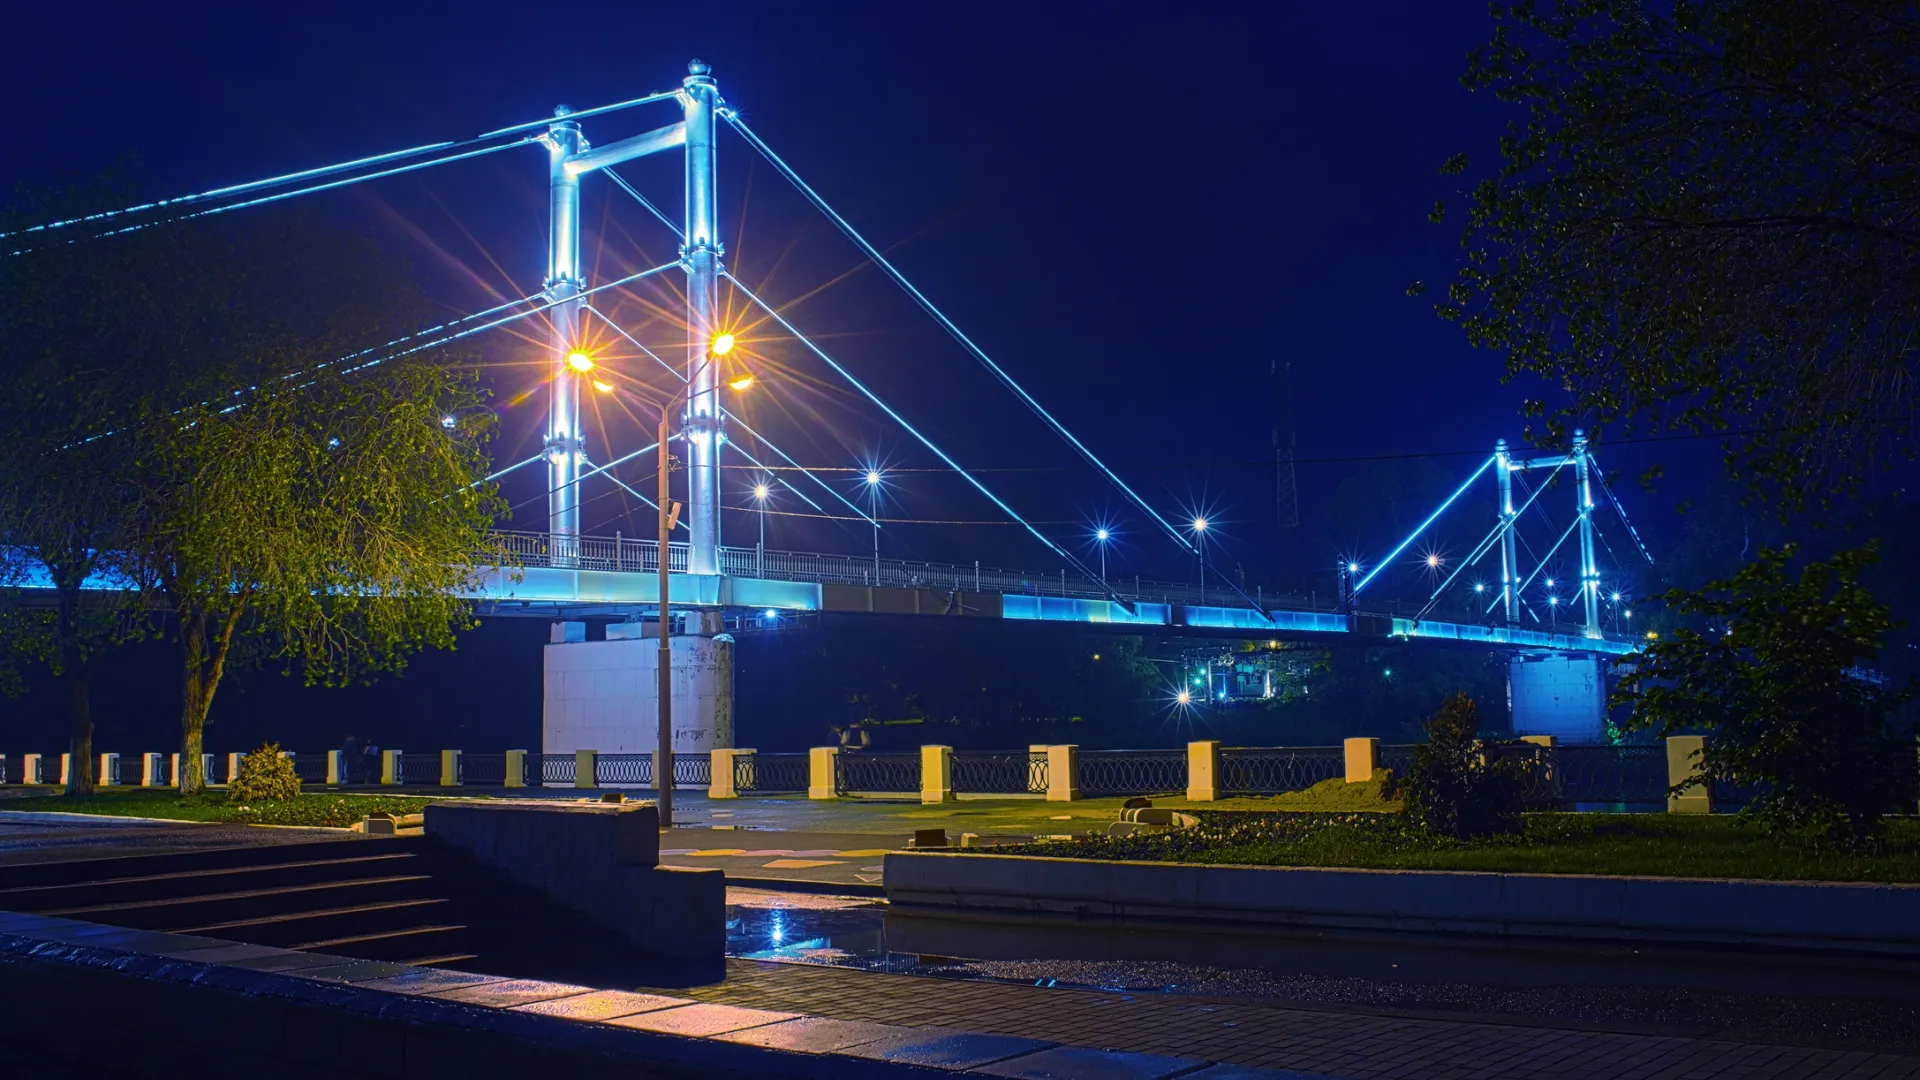 Пешеходный мост через Урал в Оренбурге. Фото: Vadim Orlov/Shutterstock/Fotodom